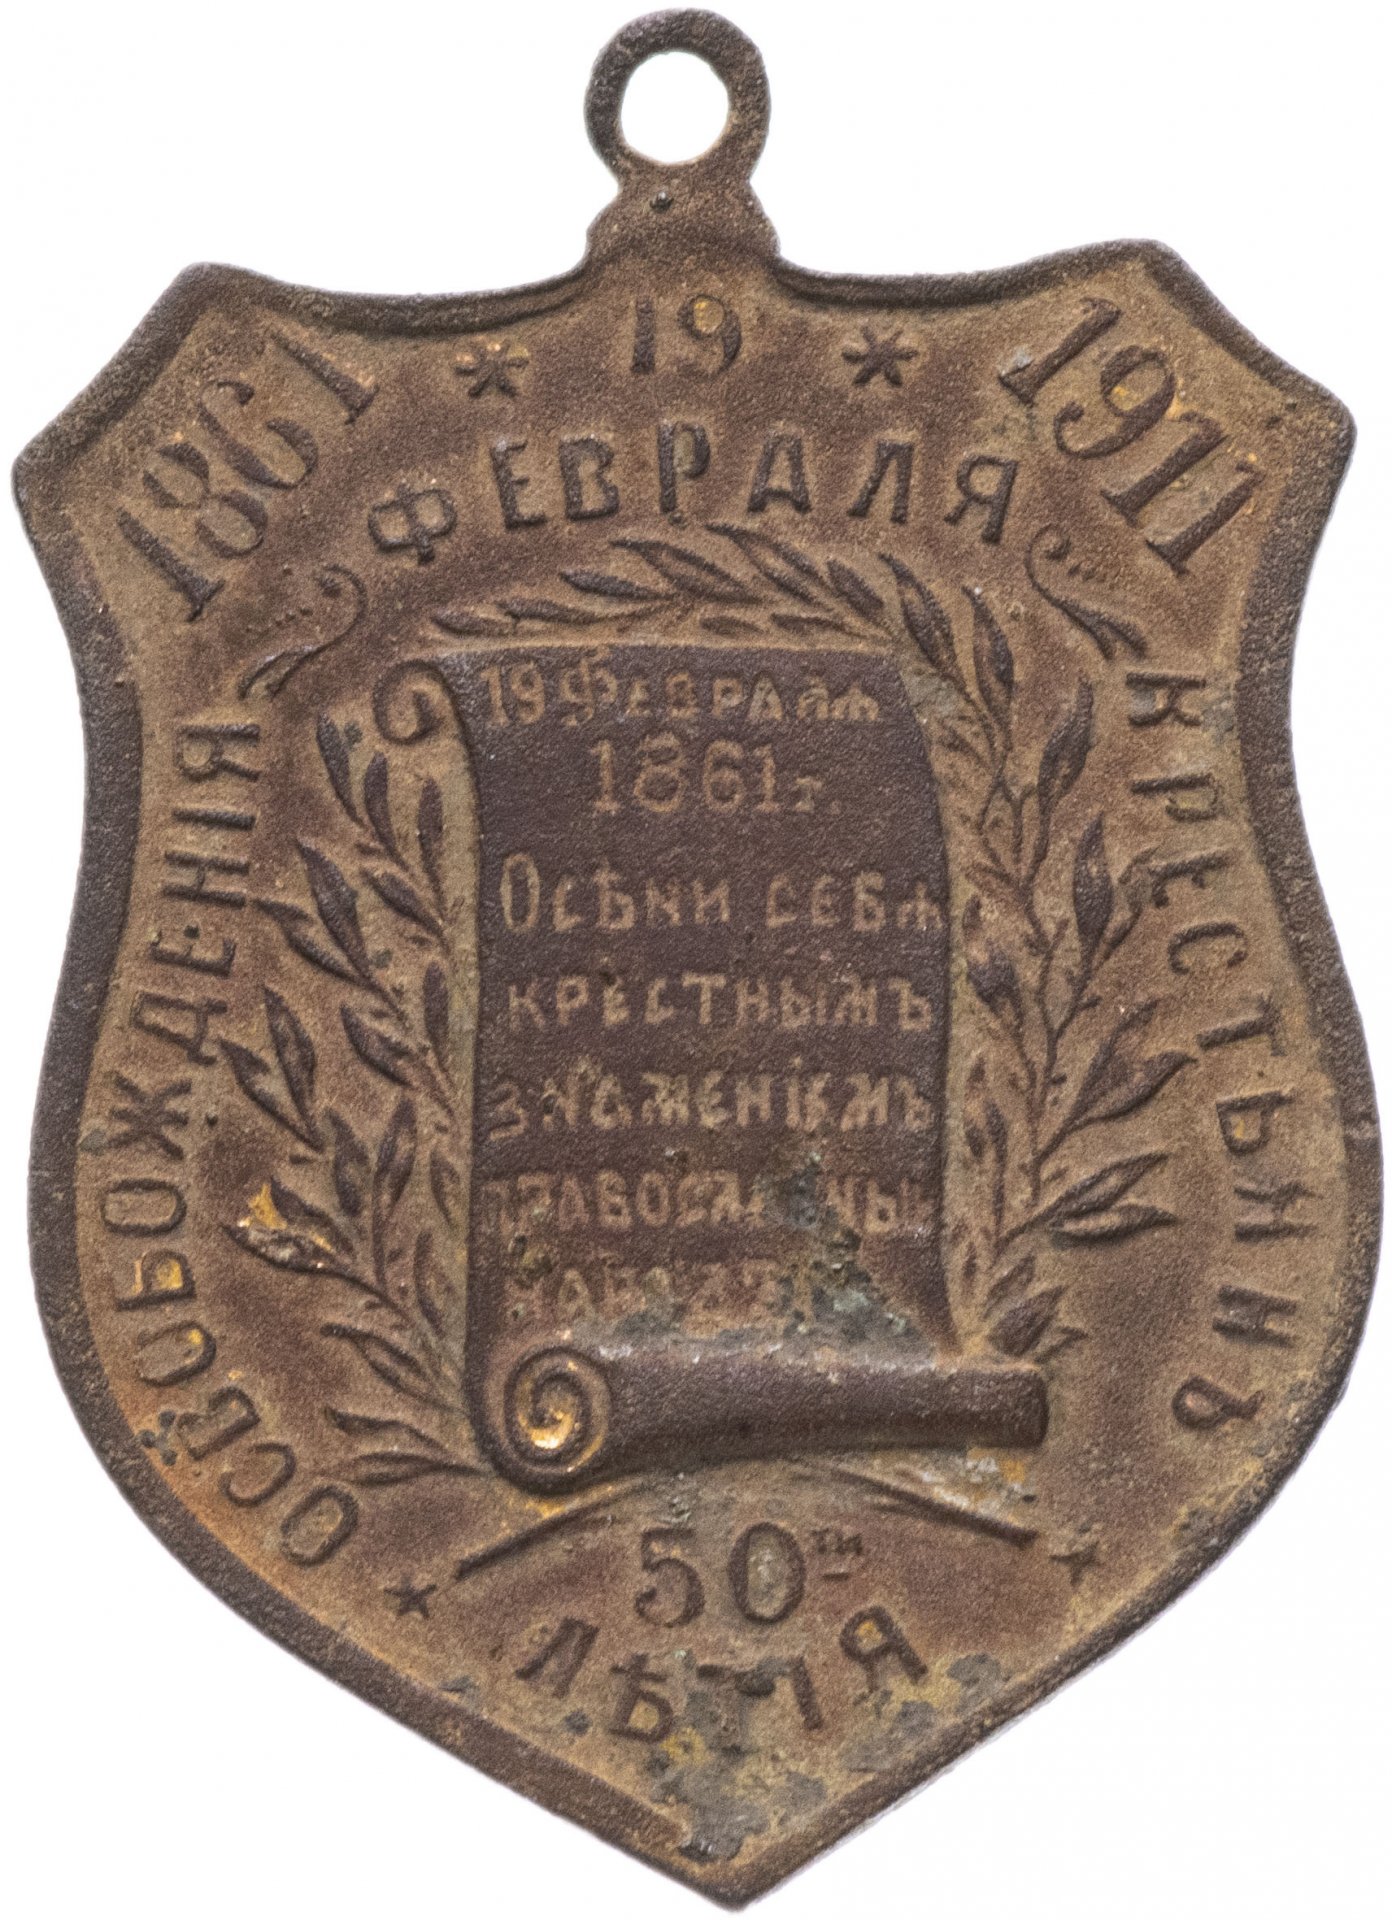 Память 50 процентов. Медаль 1861 1911 освобождение крестьян.